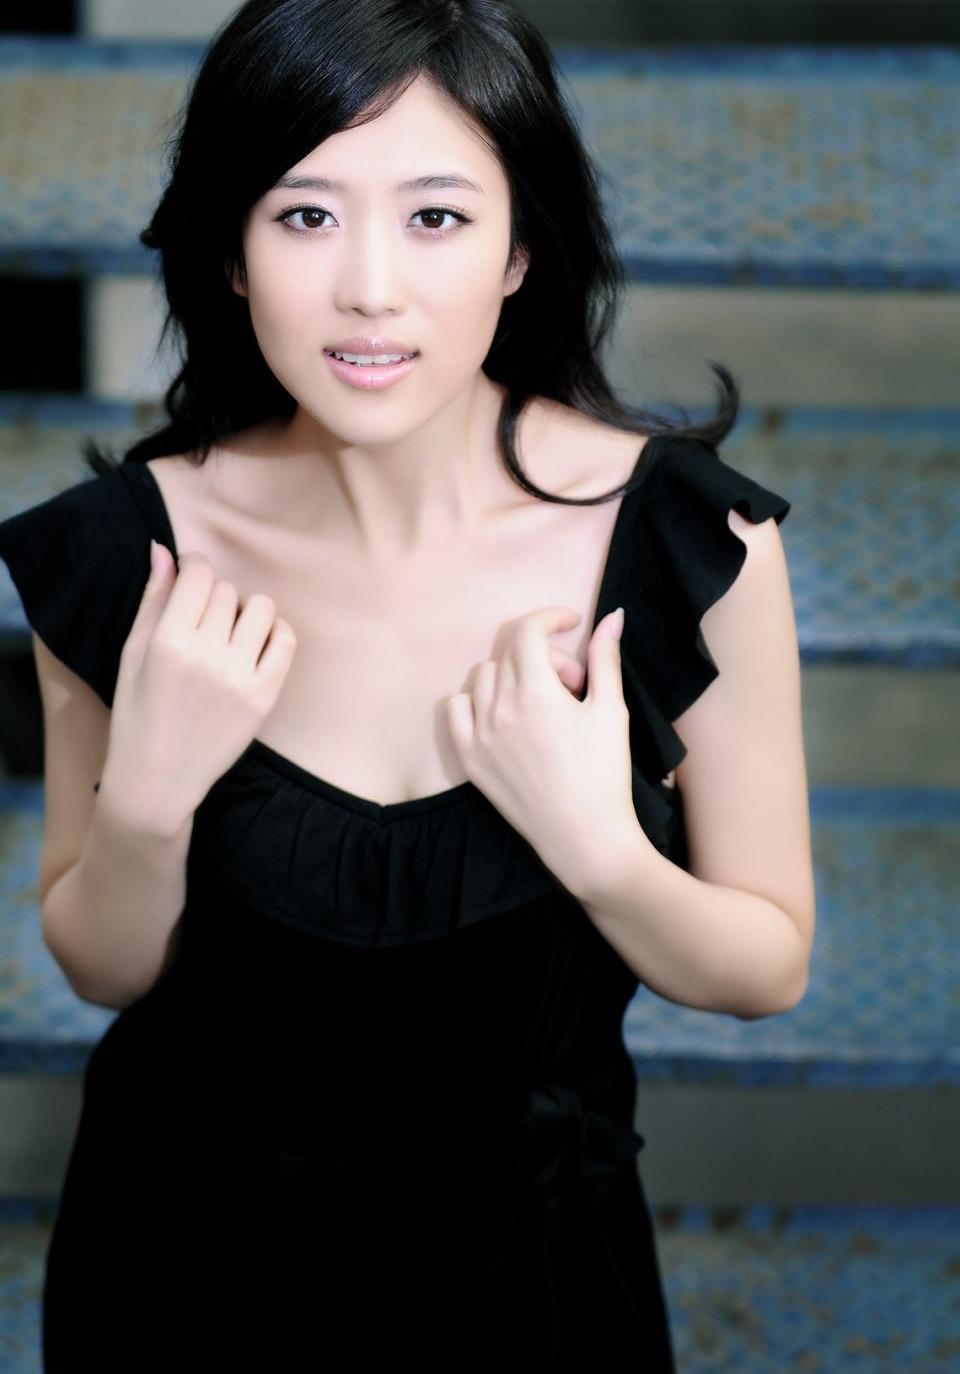 新生代女演员歌手陈西贝博客大图写真,新生代女演员歌手陈西贝博客大图写真4